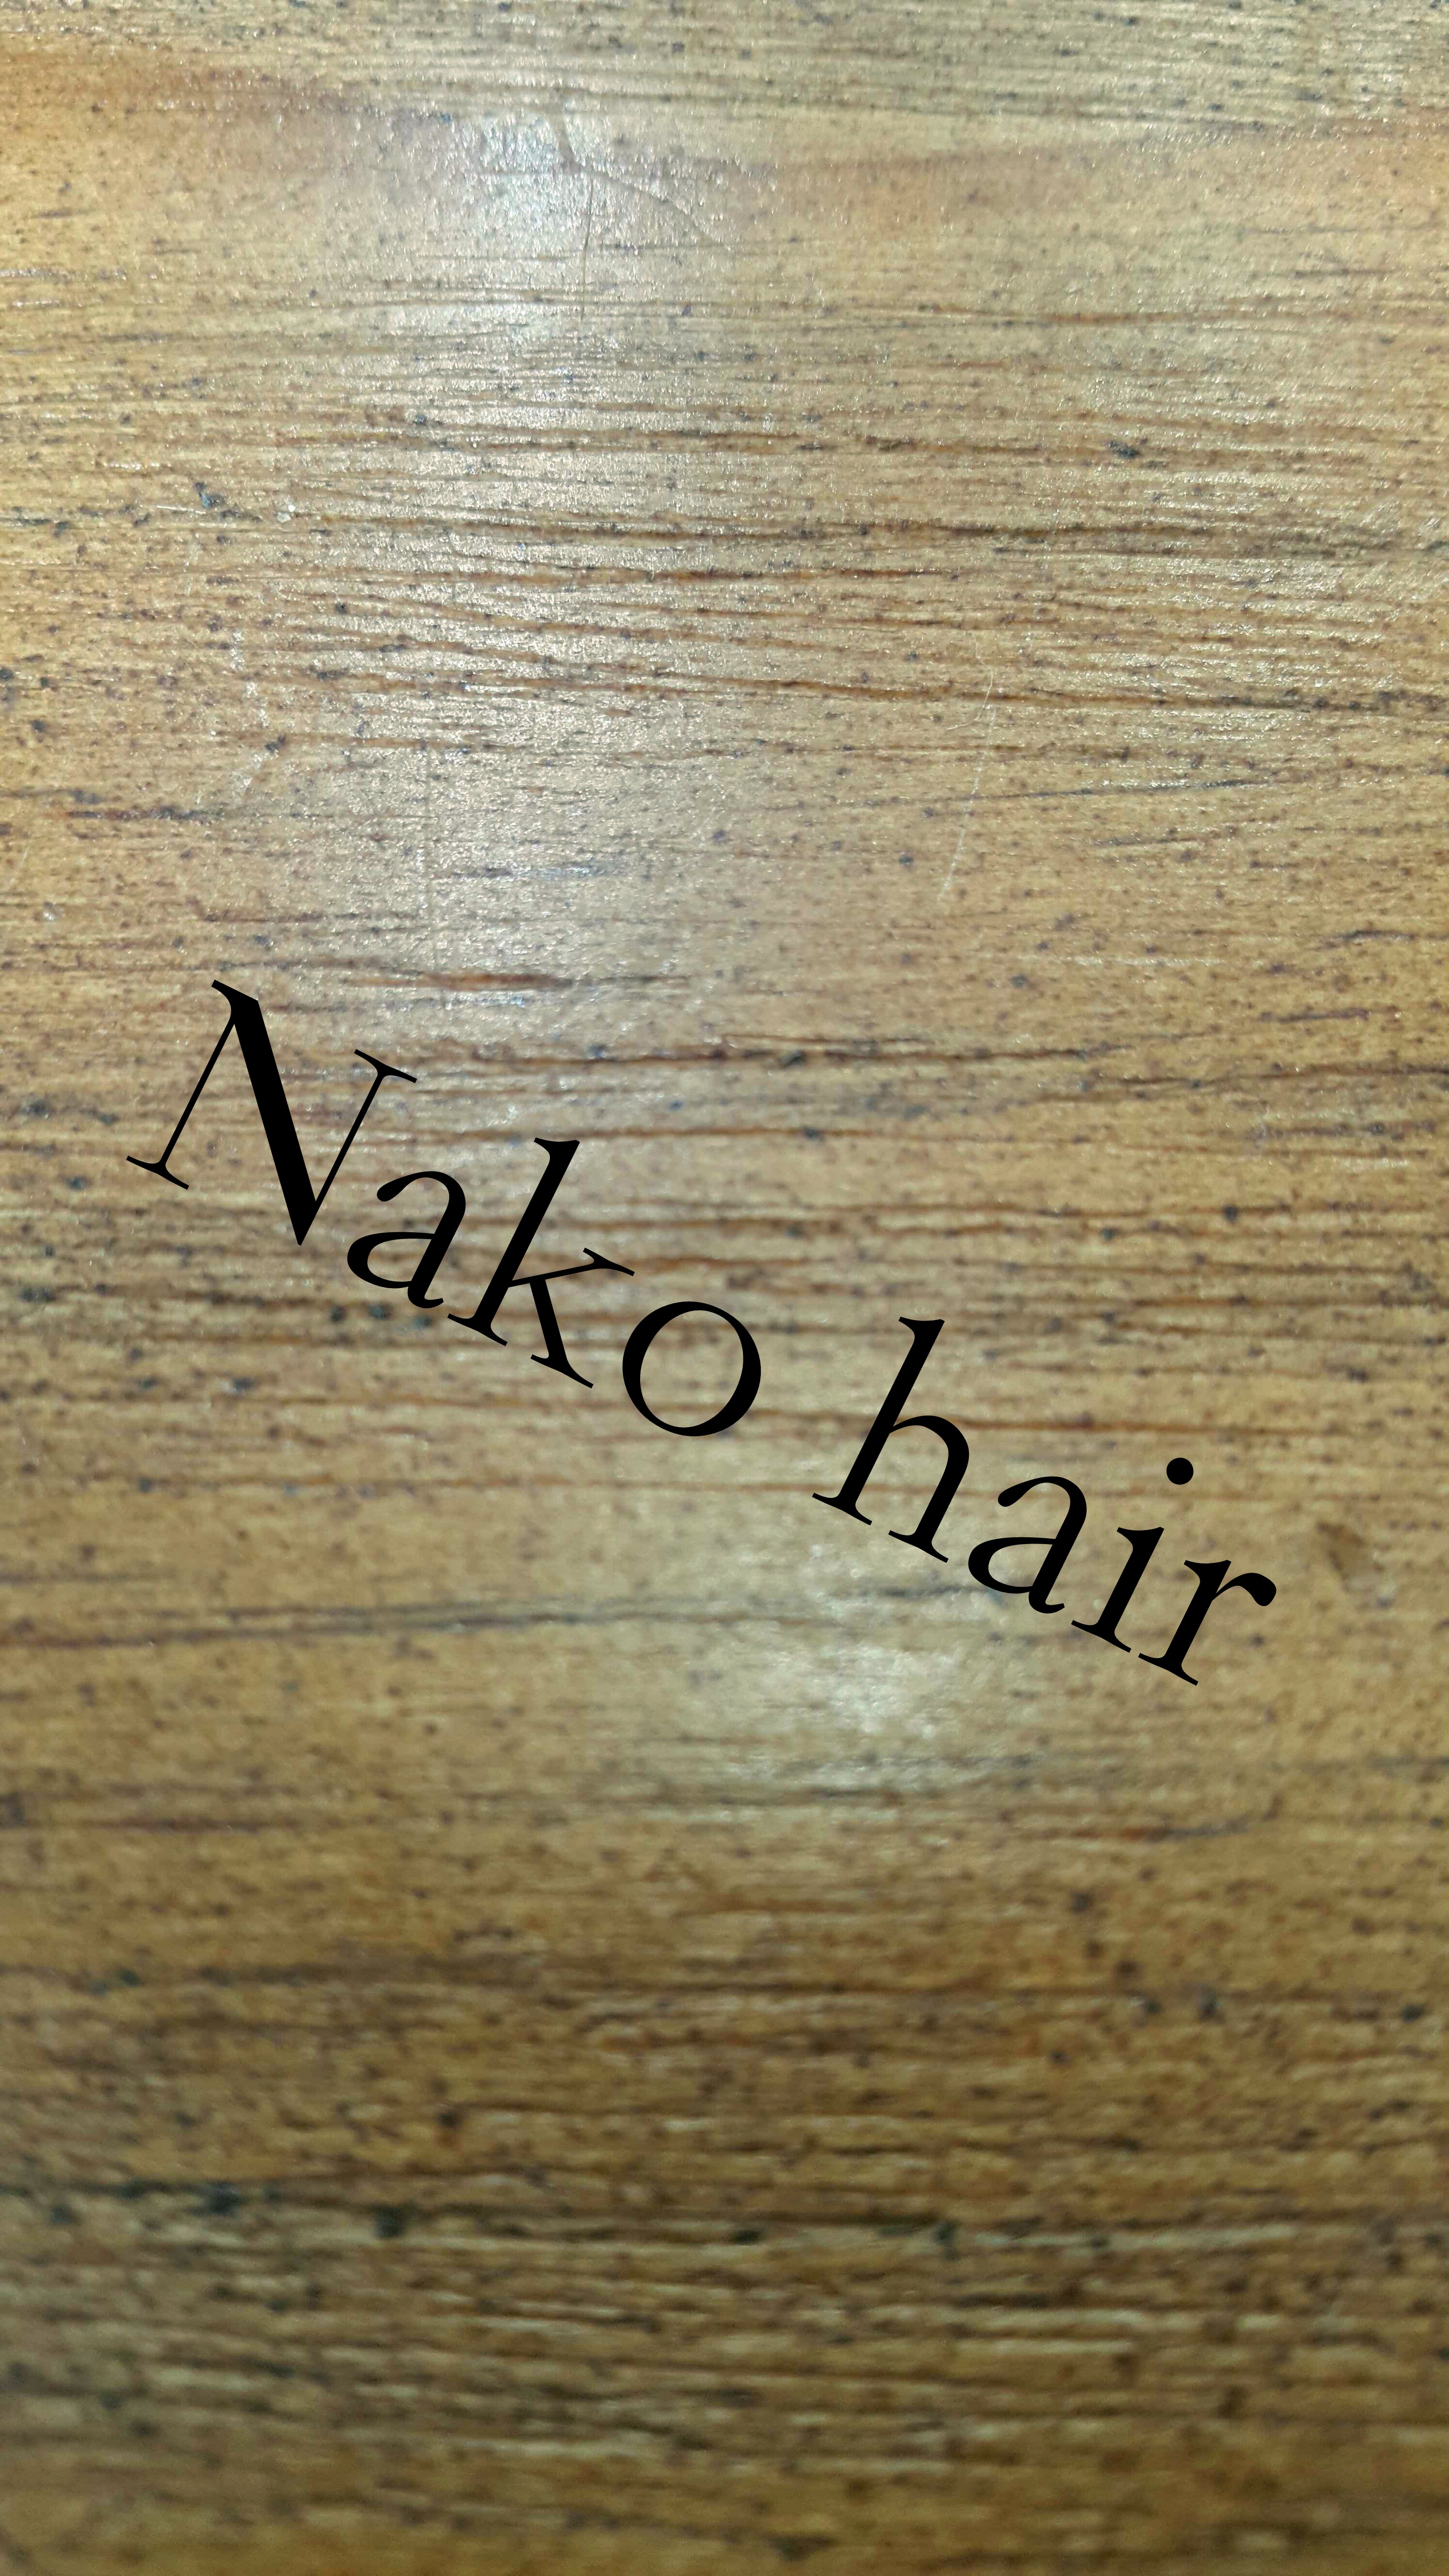 髮型師 Hair Stylist: Nako yeung